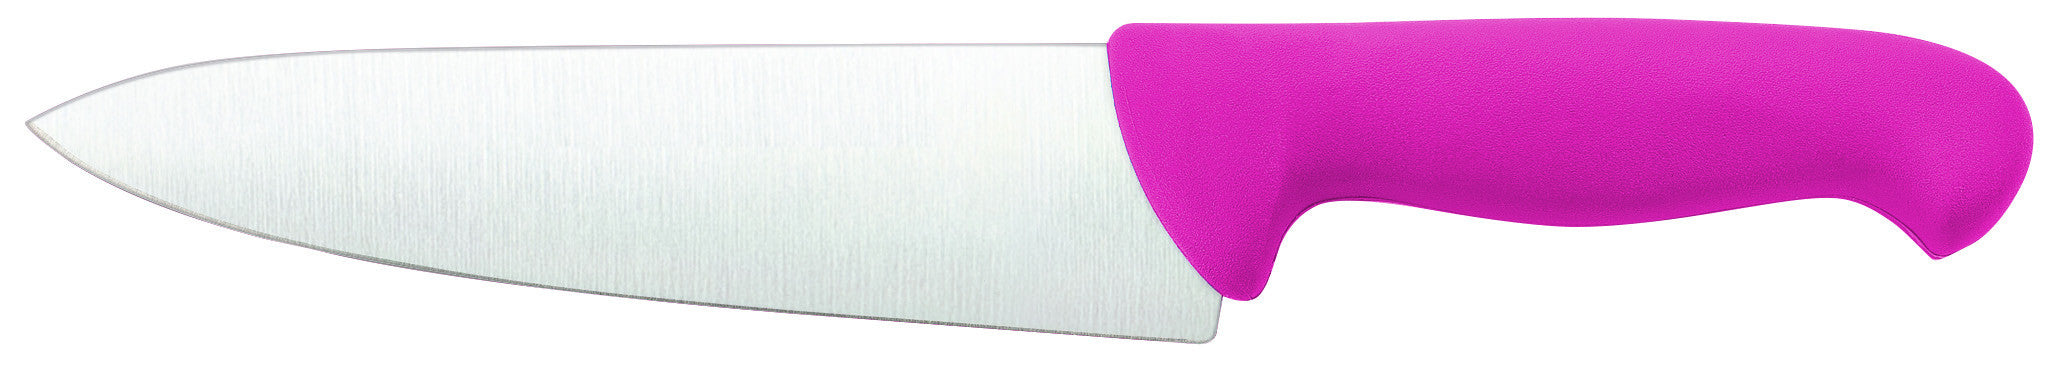 Cuchillo de Chef 20 cm. rosa